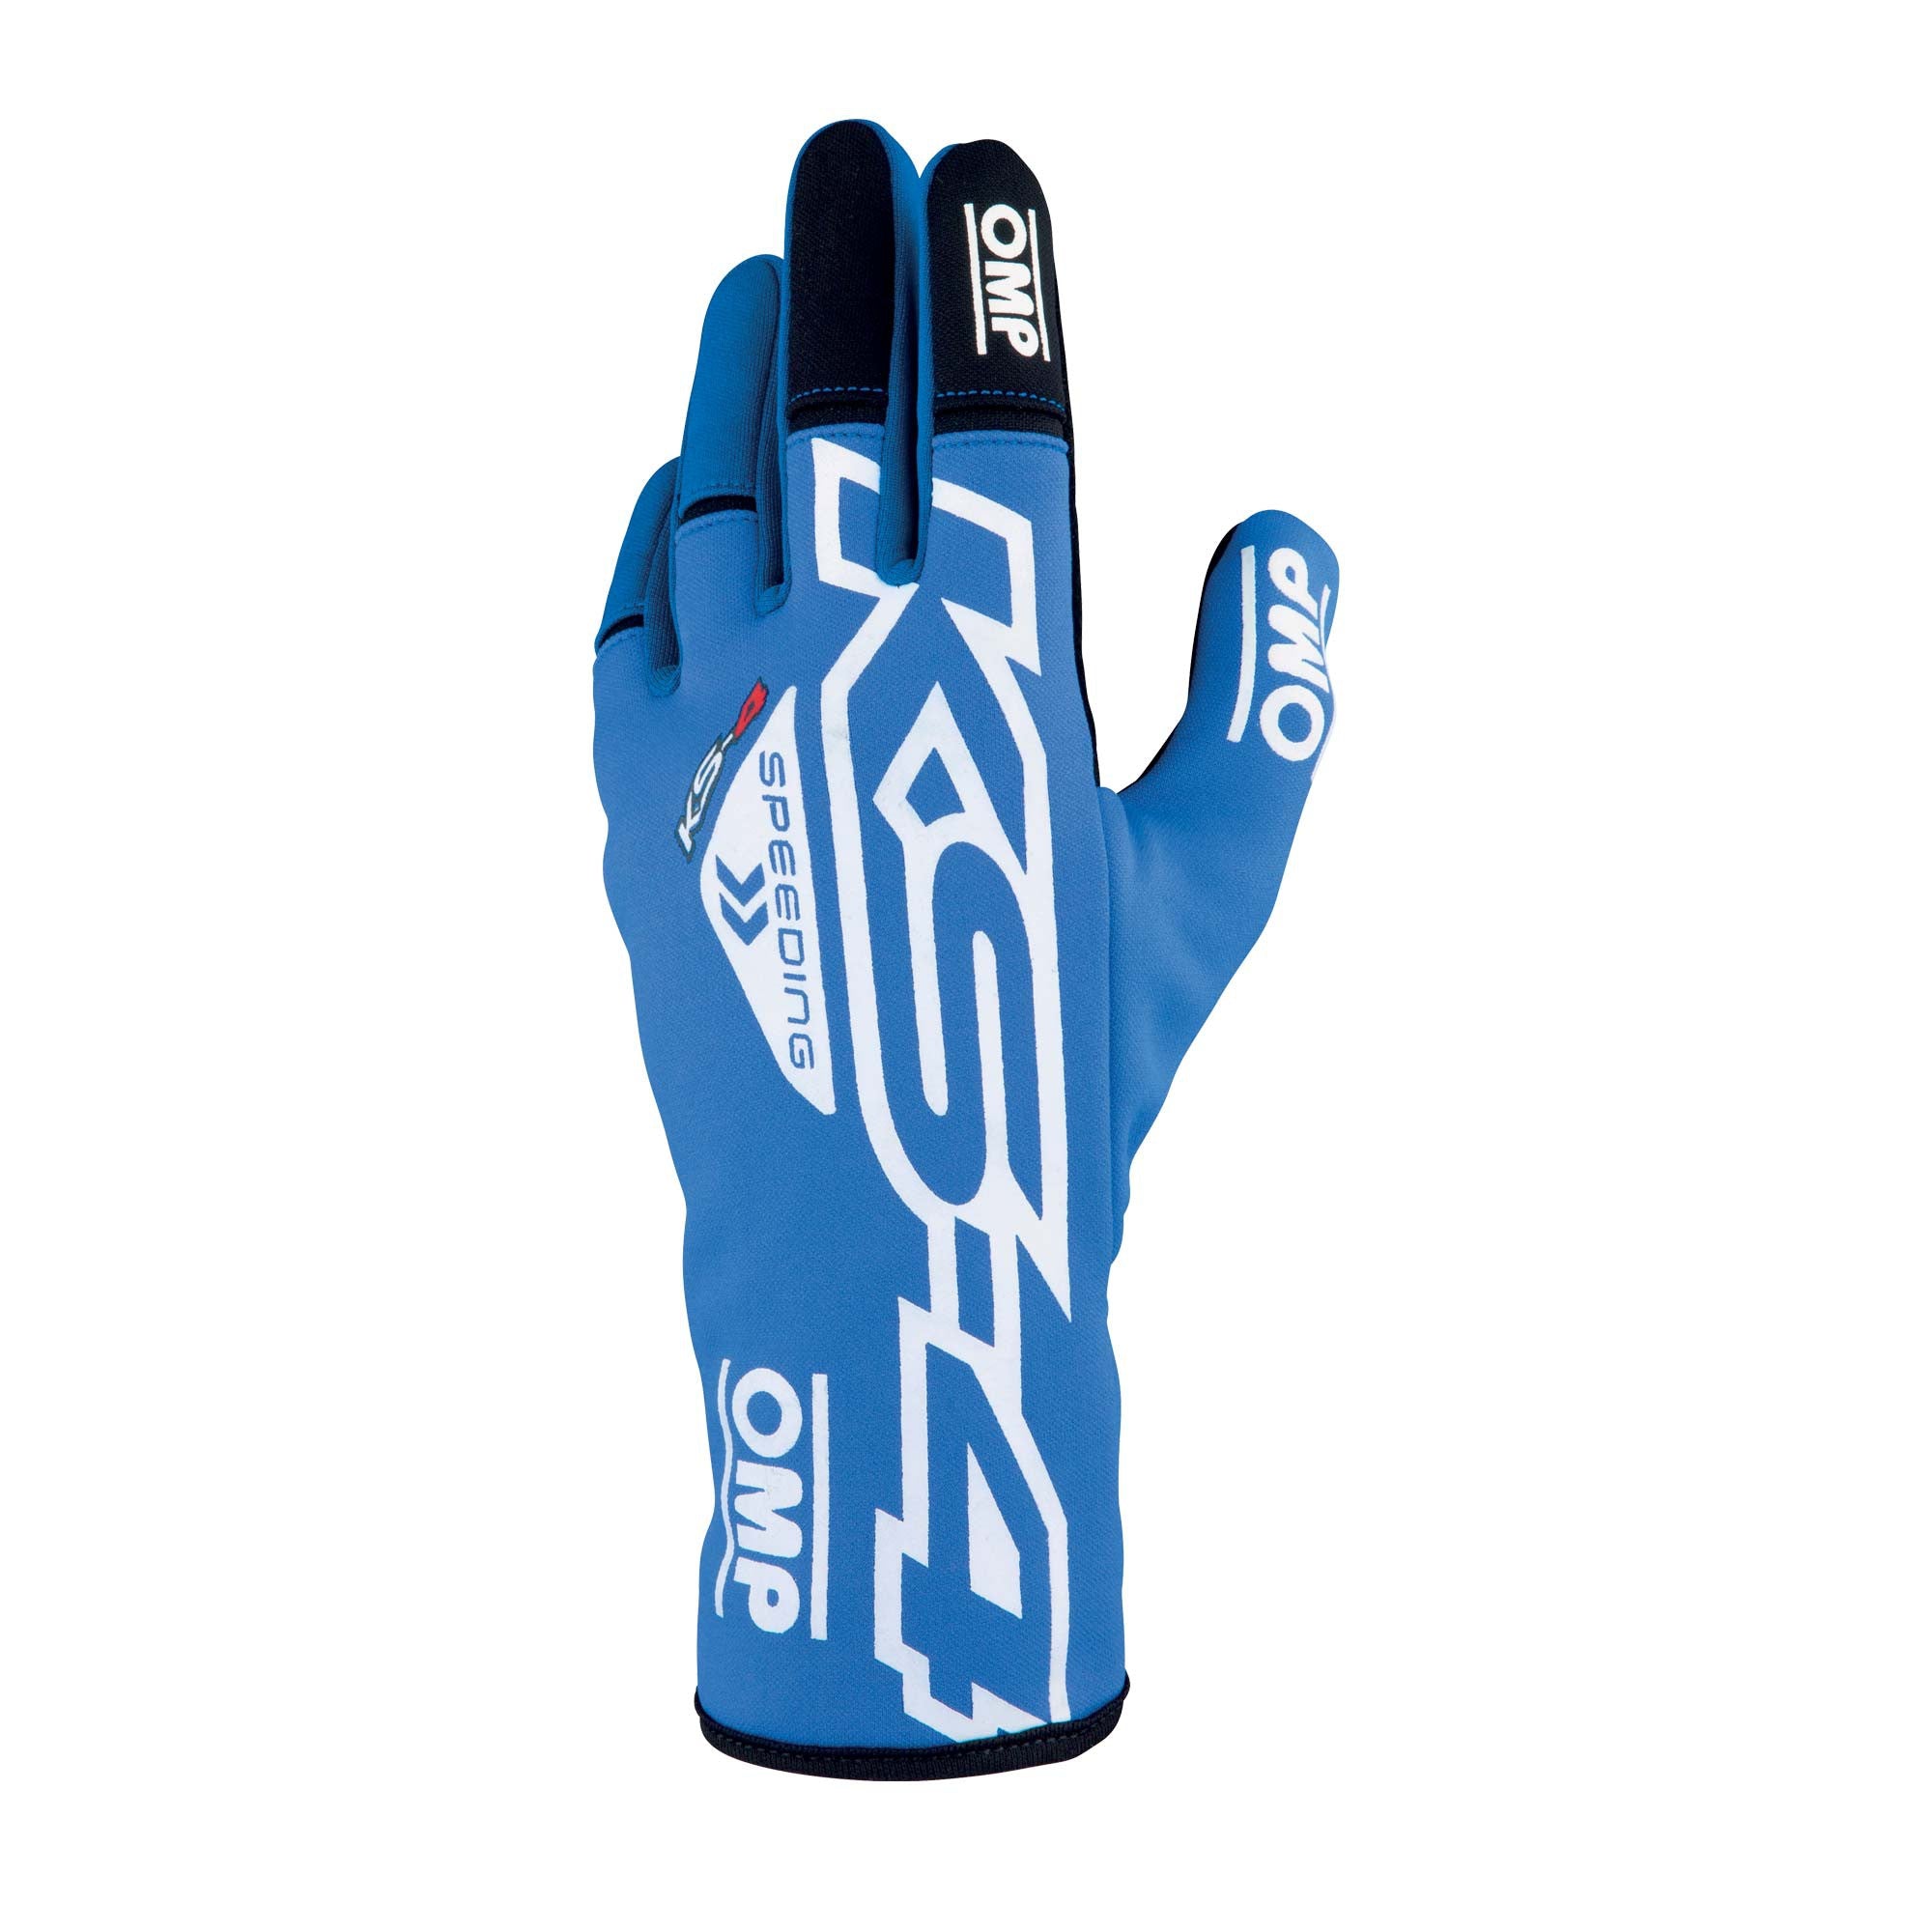 OMP KB0-2750-A01-043-M KS-4 Gloves my2023 Karting gloves, blue/white, size M Photo-0 